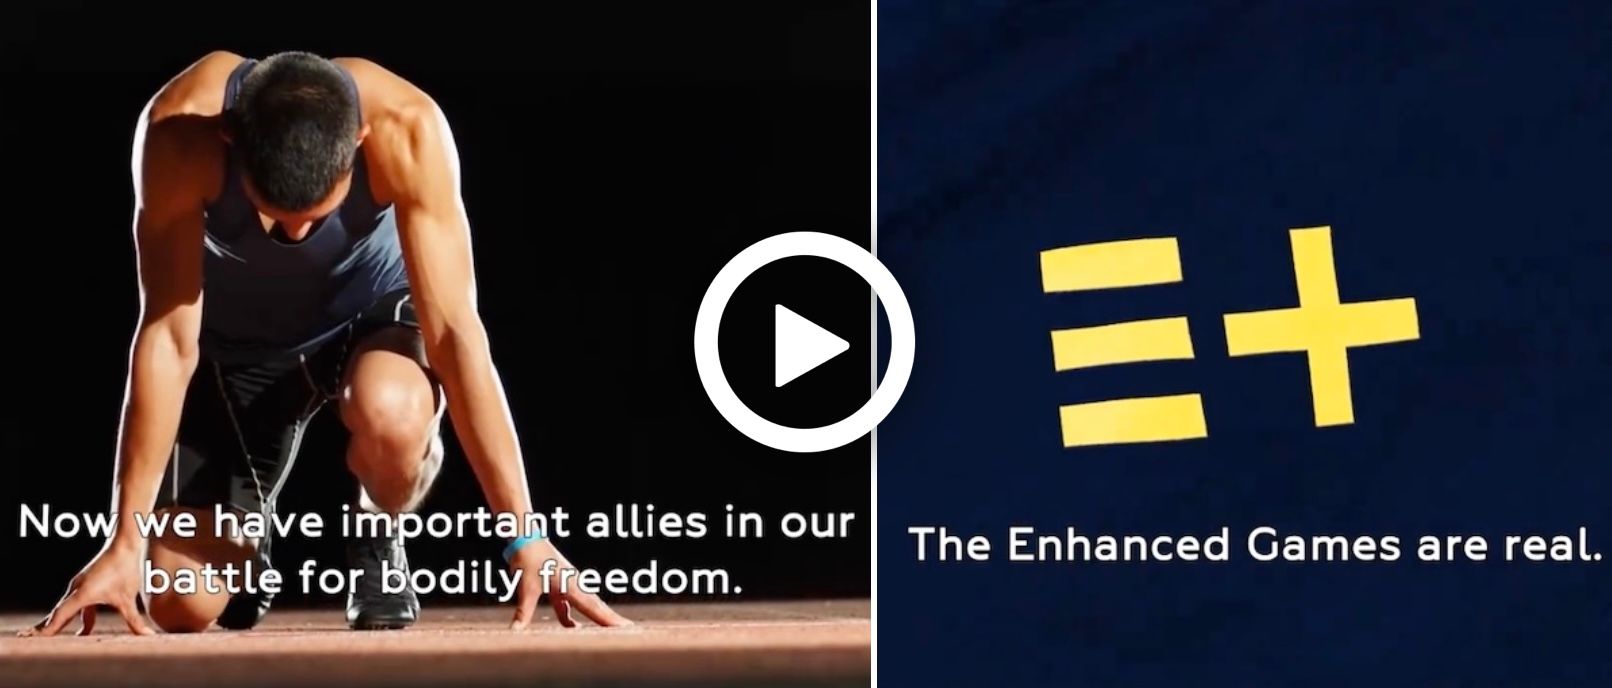 GeenStijl Pieter Thiel financiert de Steroid Olympics genaamd "The